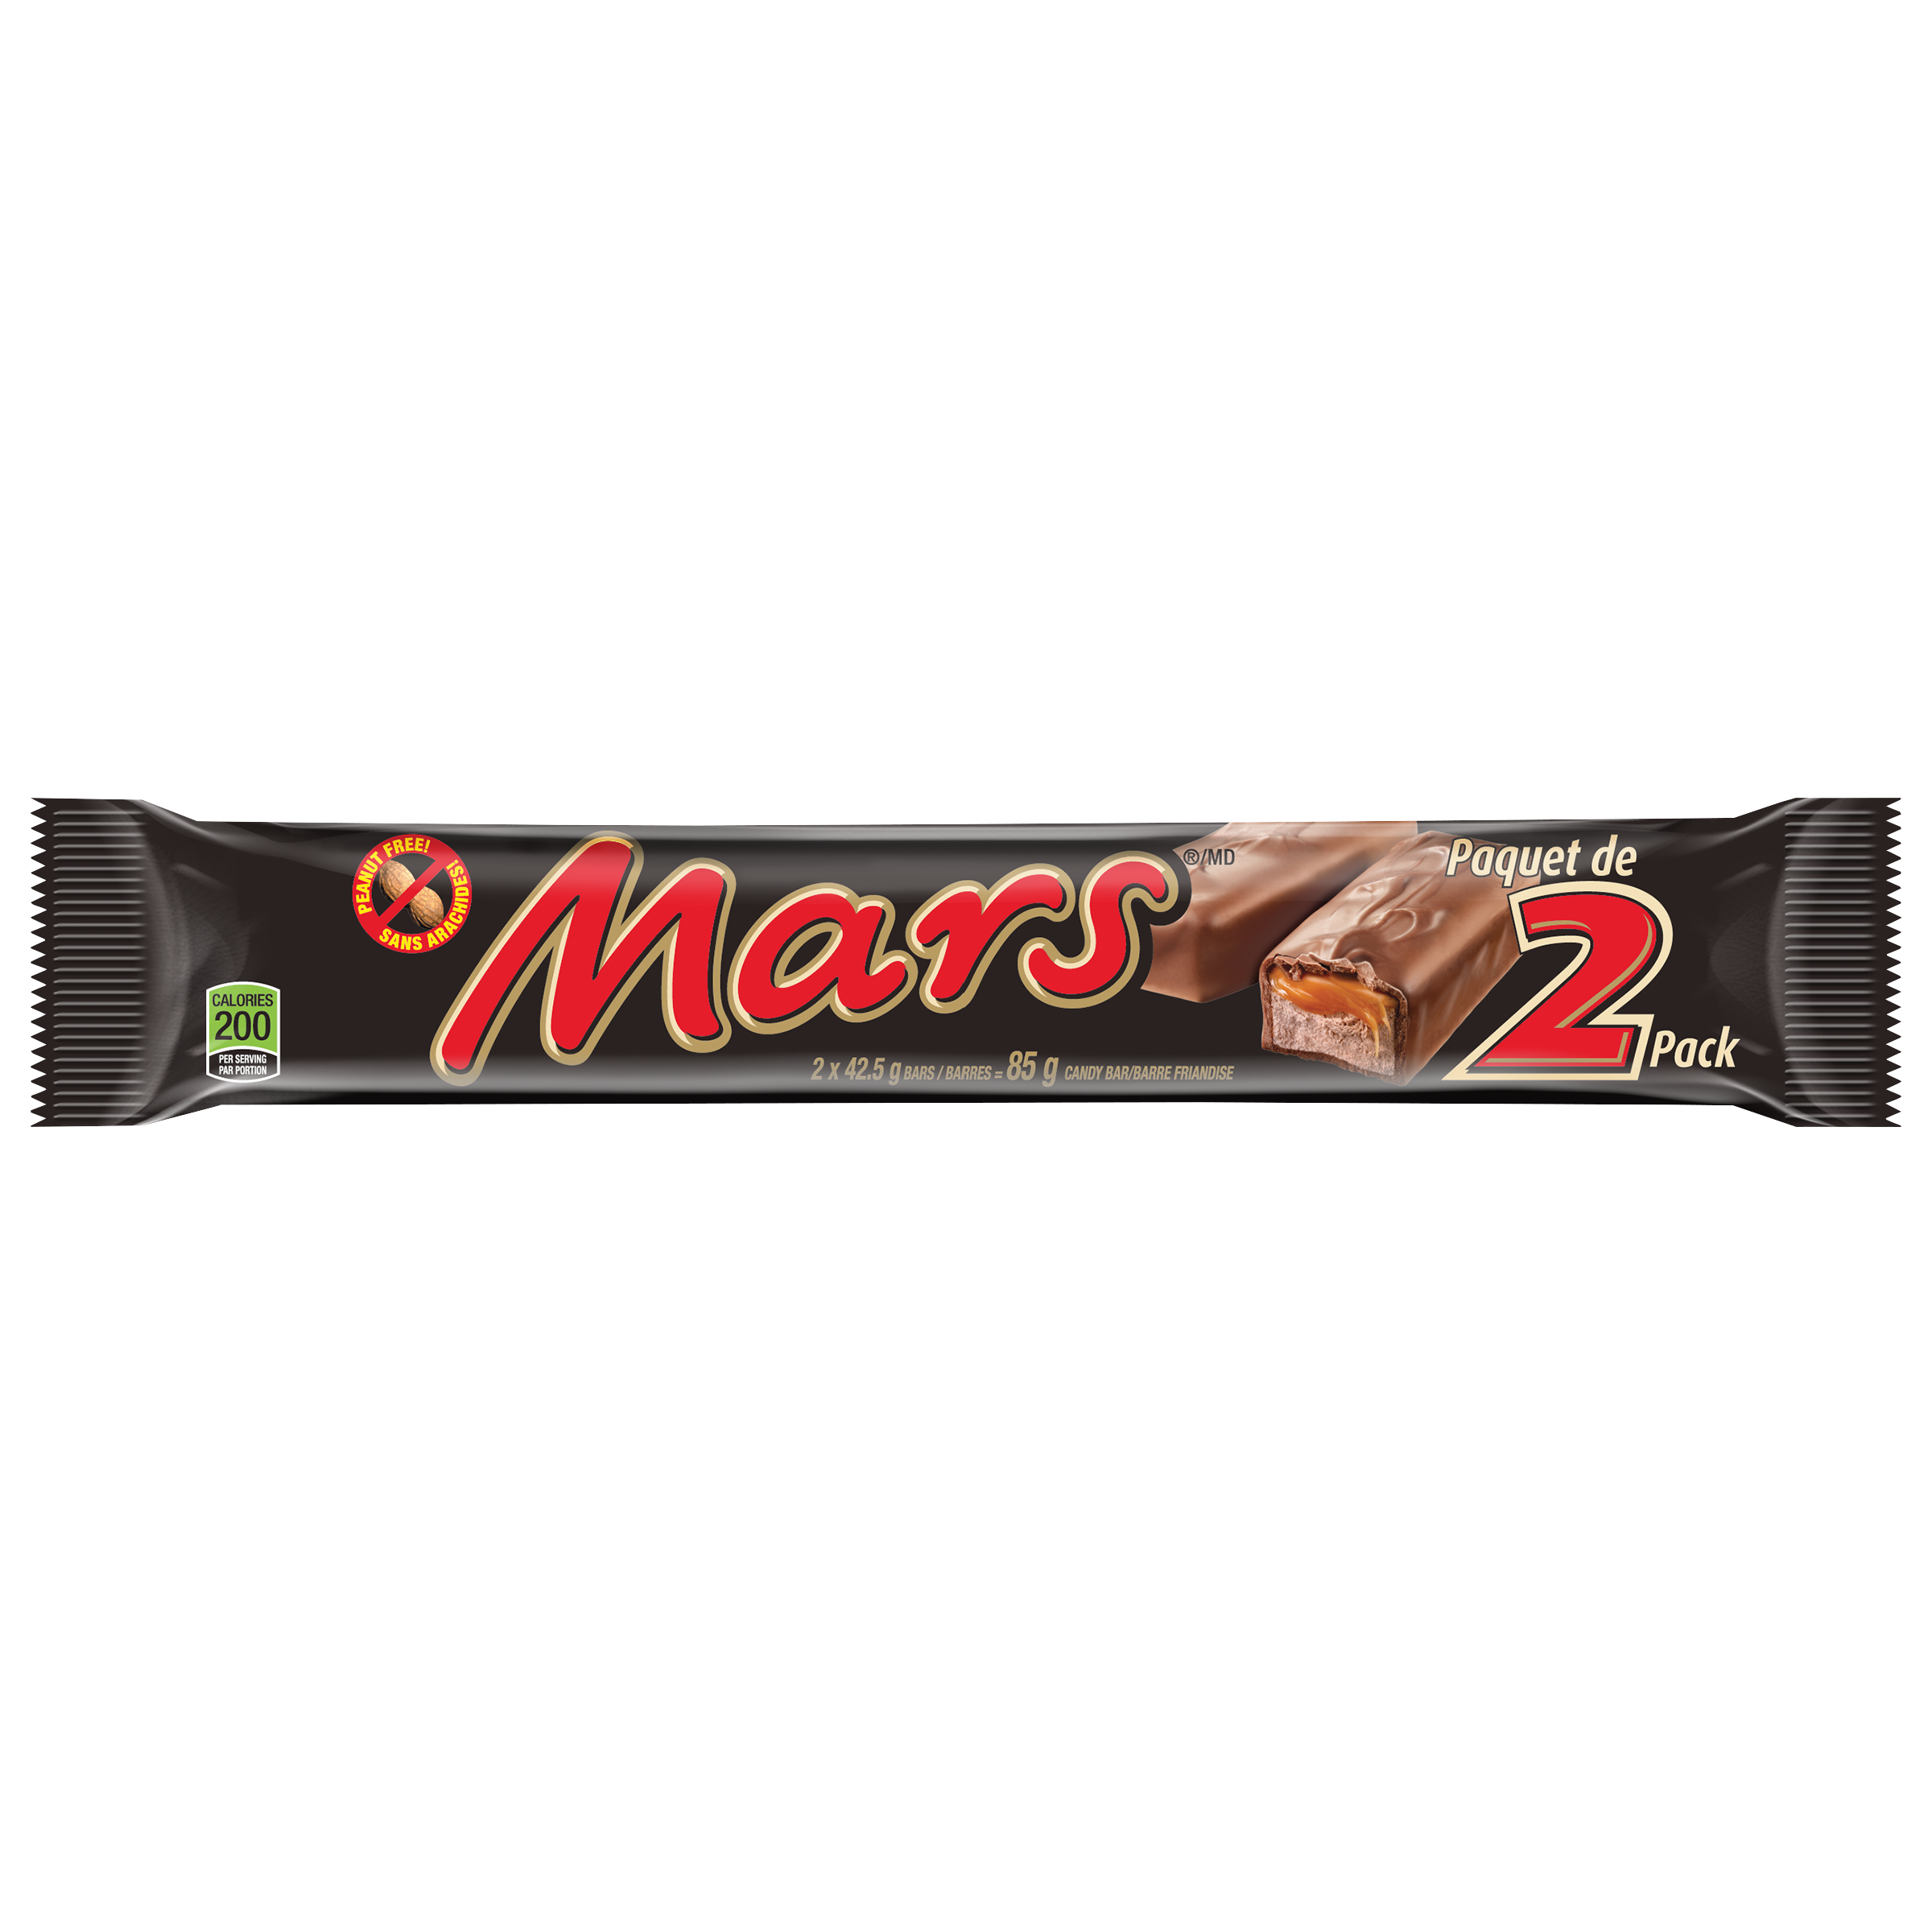 MARS Bar 2 Pack, 85g